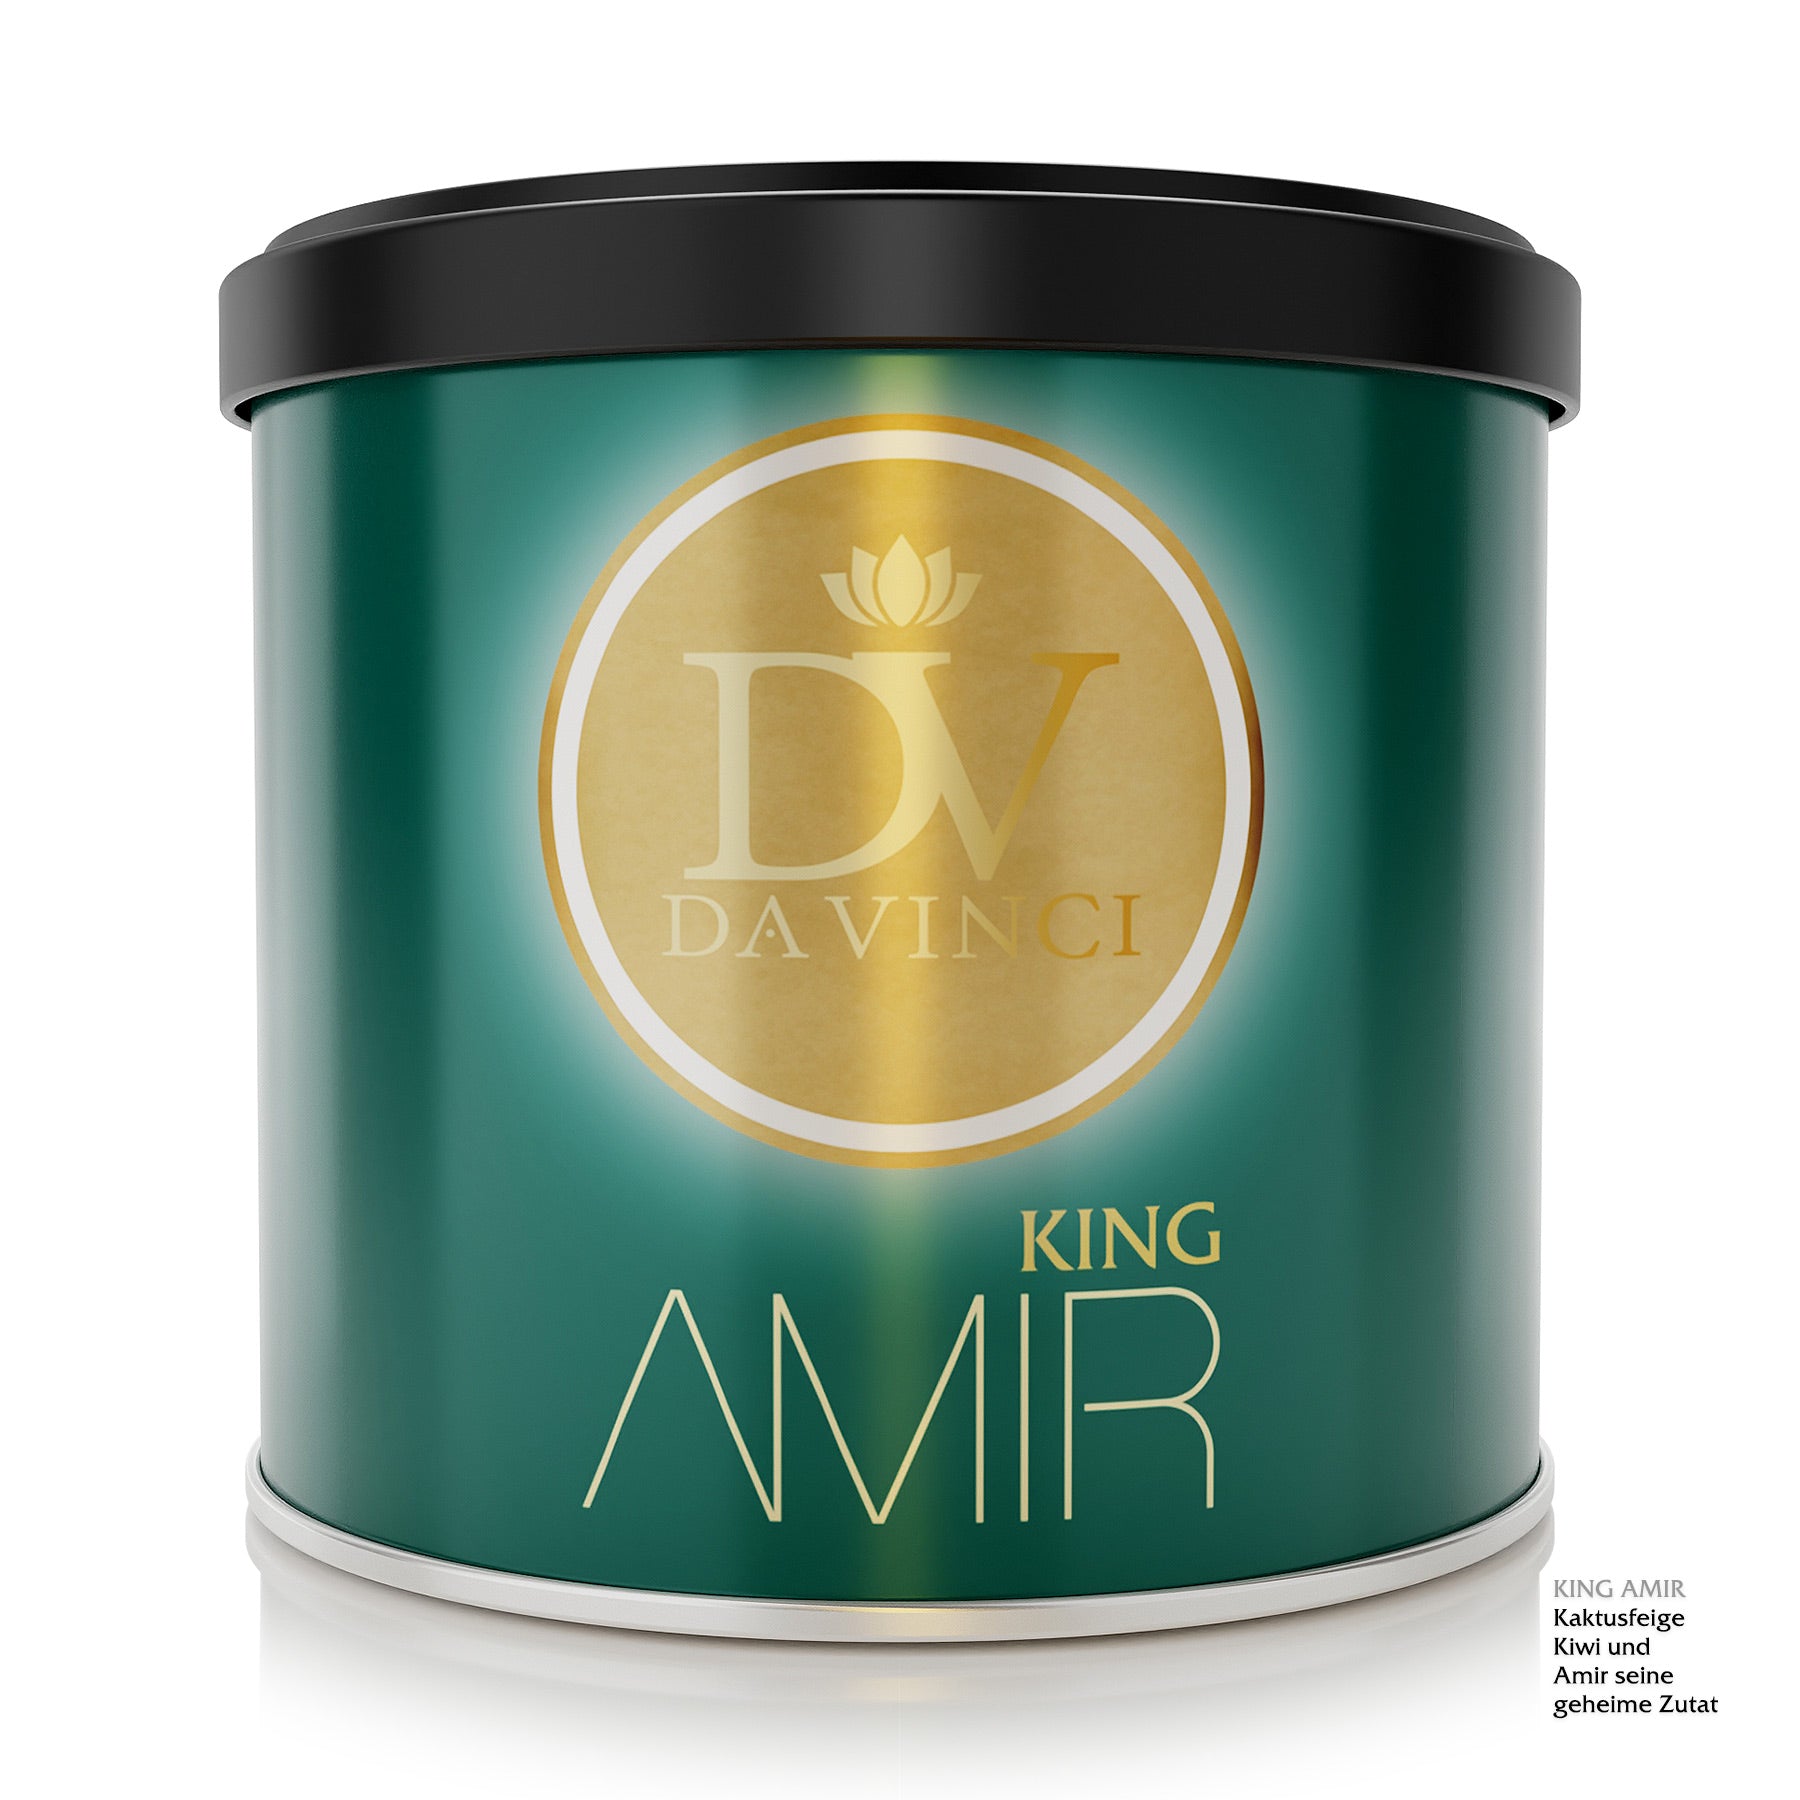 DA VINCI - KING AMIR - 200g Tabak (9129412755788)